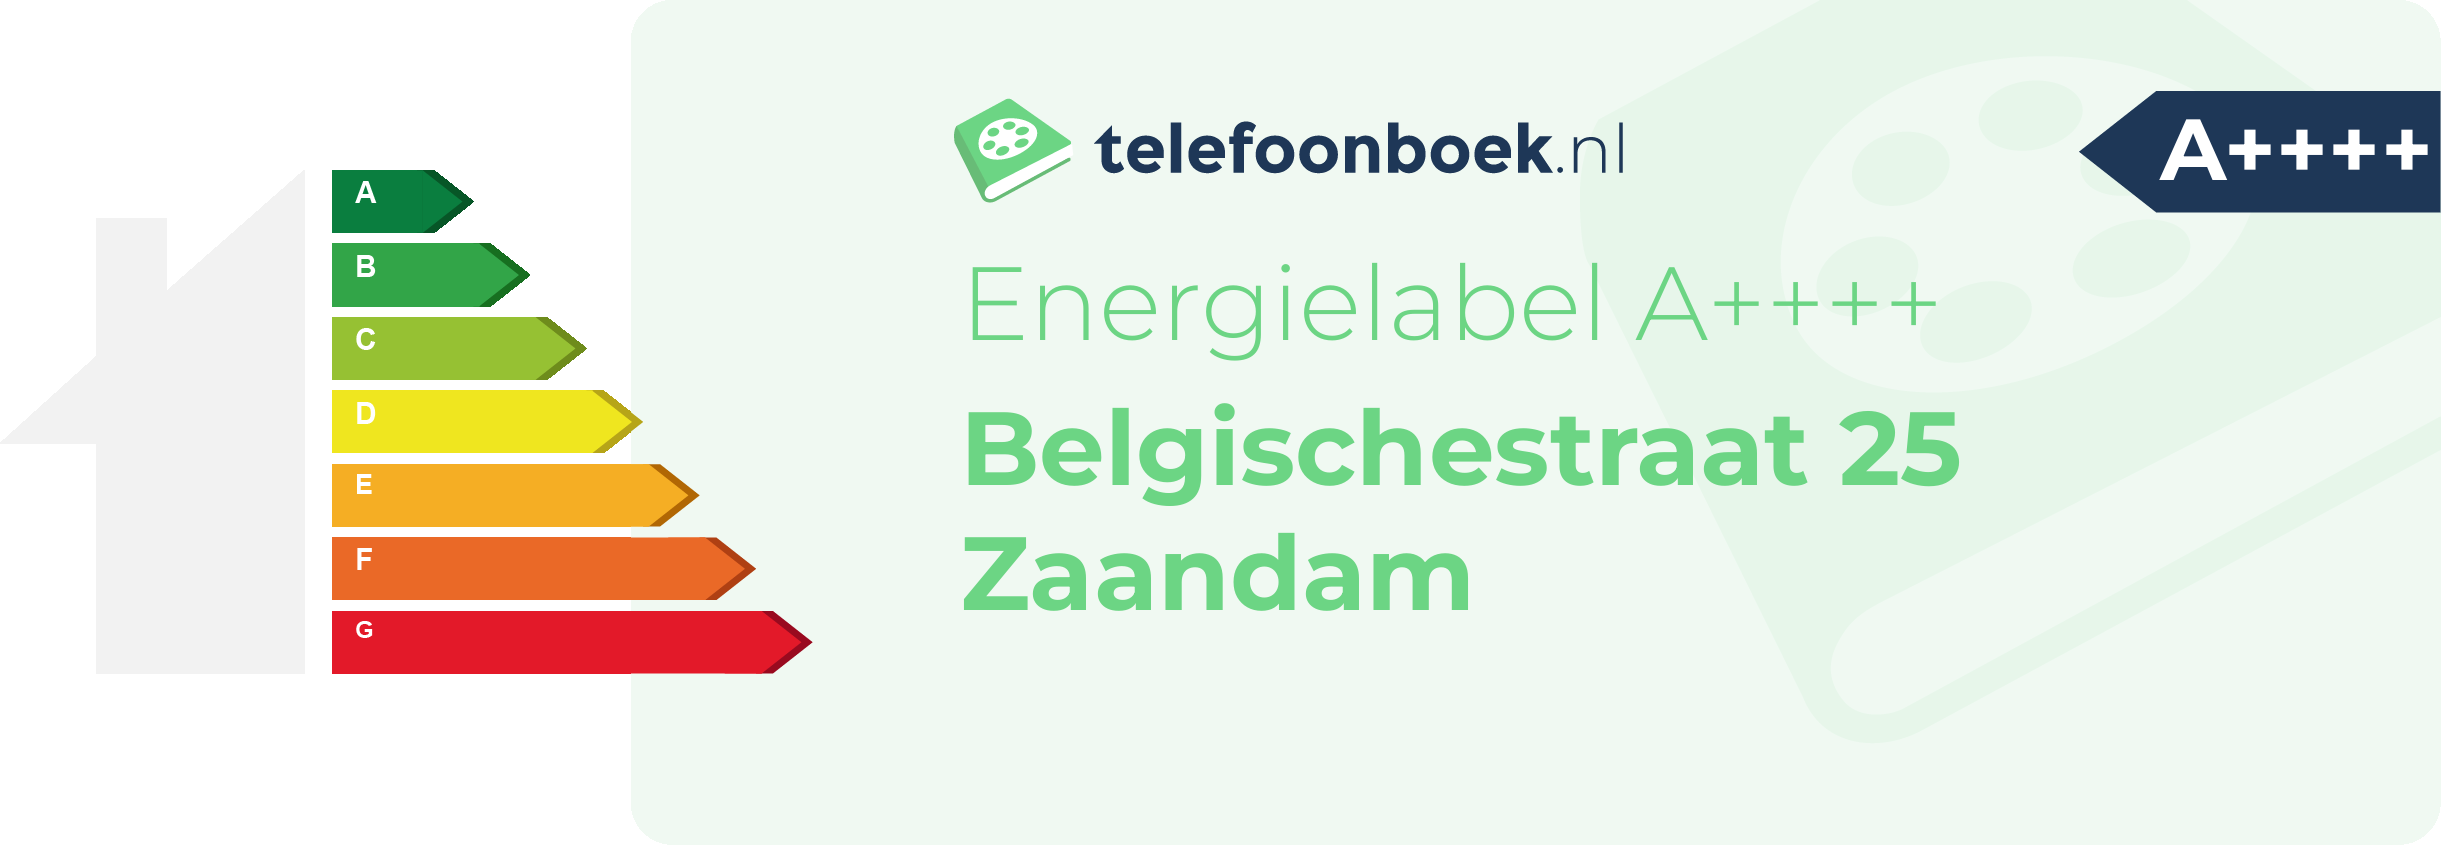 Energielabel Belgischestraat 25 Zaandam